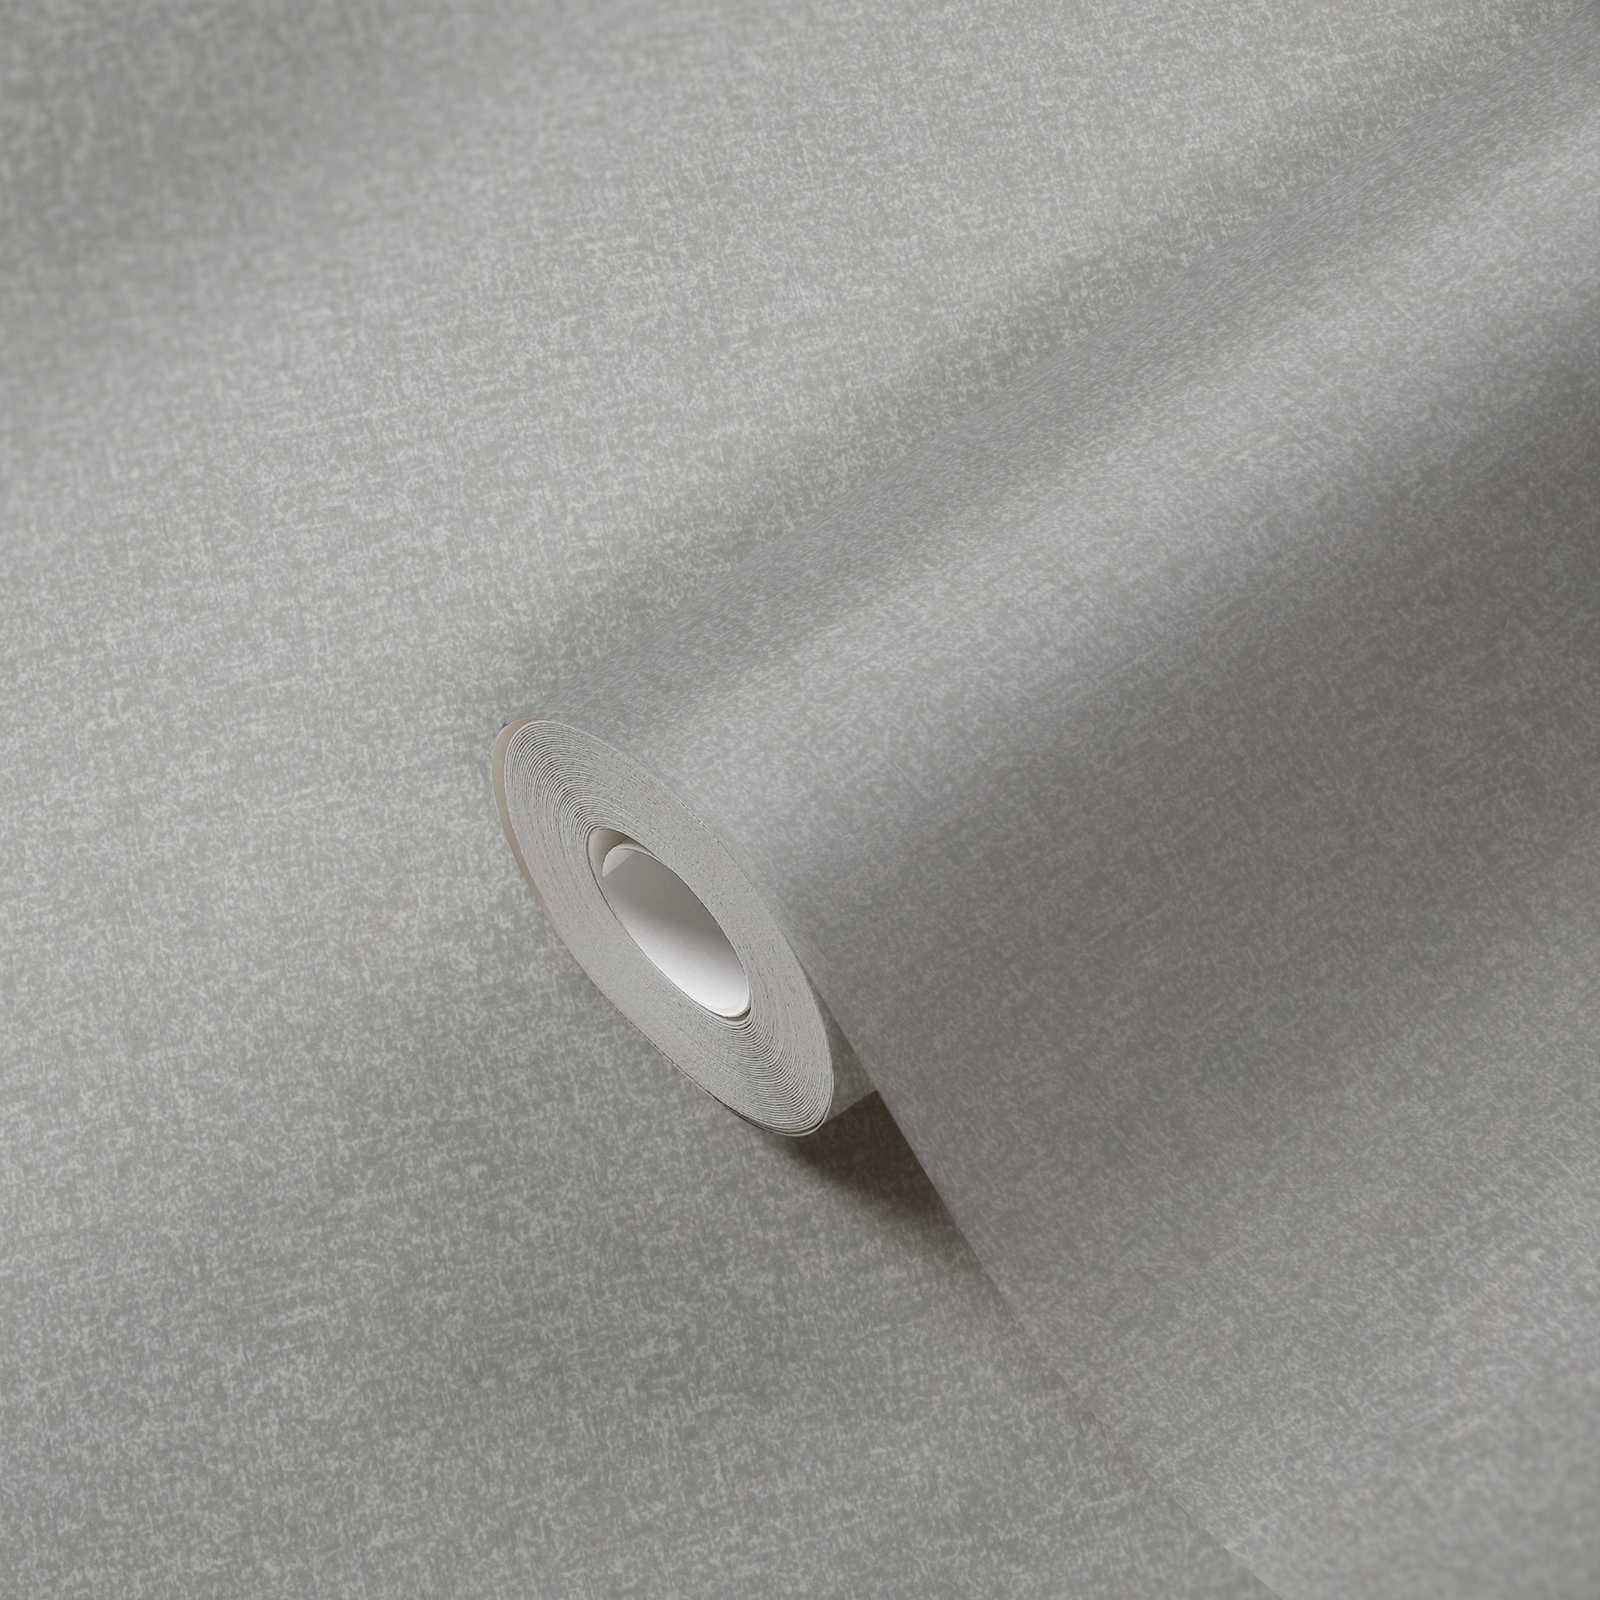             Papier peint intissé uni avec motif légèrement structuré - gris
        